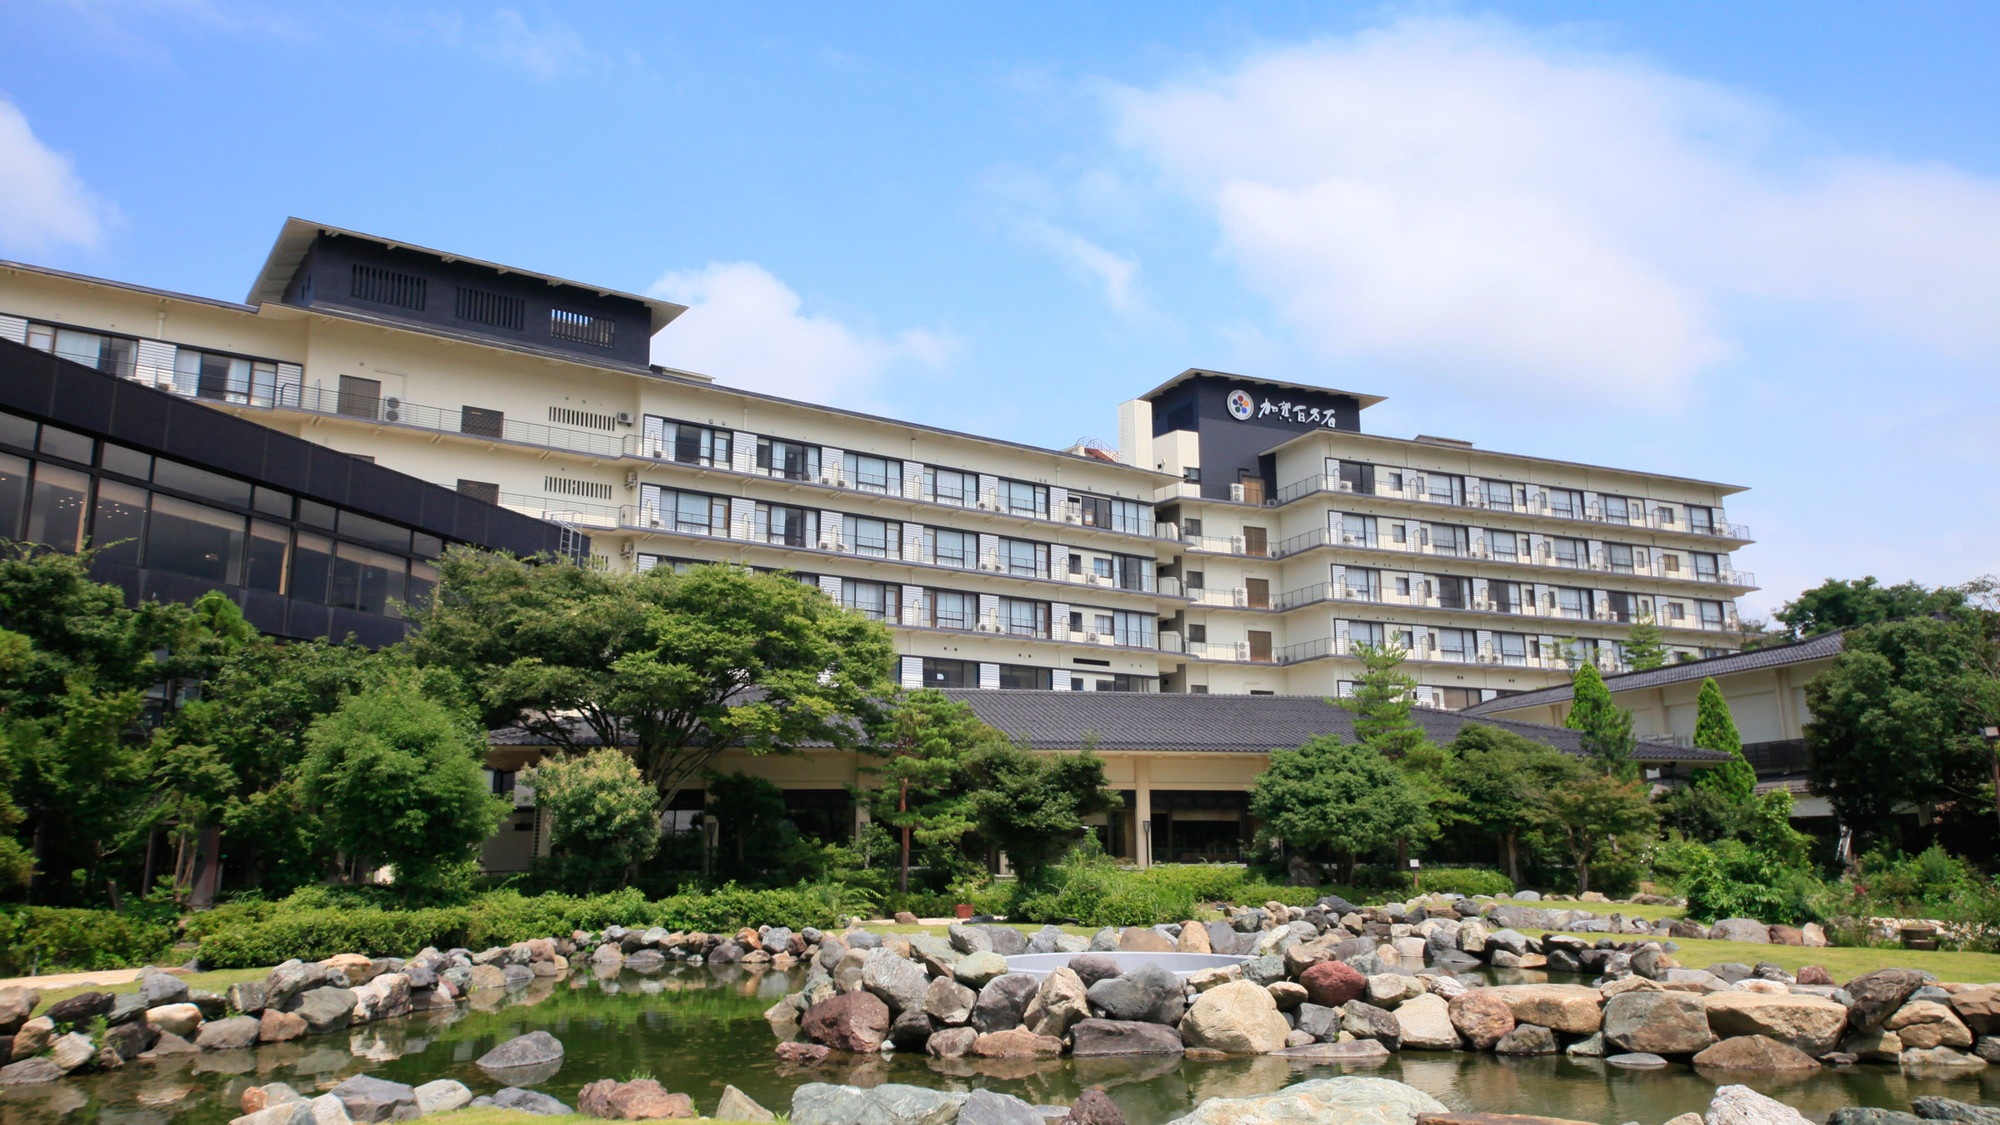 石川県 泊まってよかった 4人部屋プランのあるおすすめ旅館 ホテル予約 Biglobe旅行